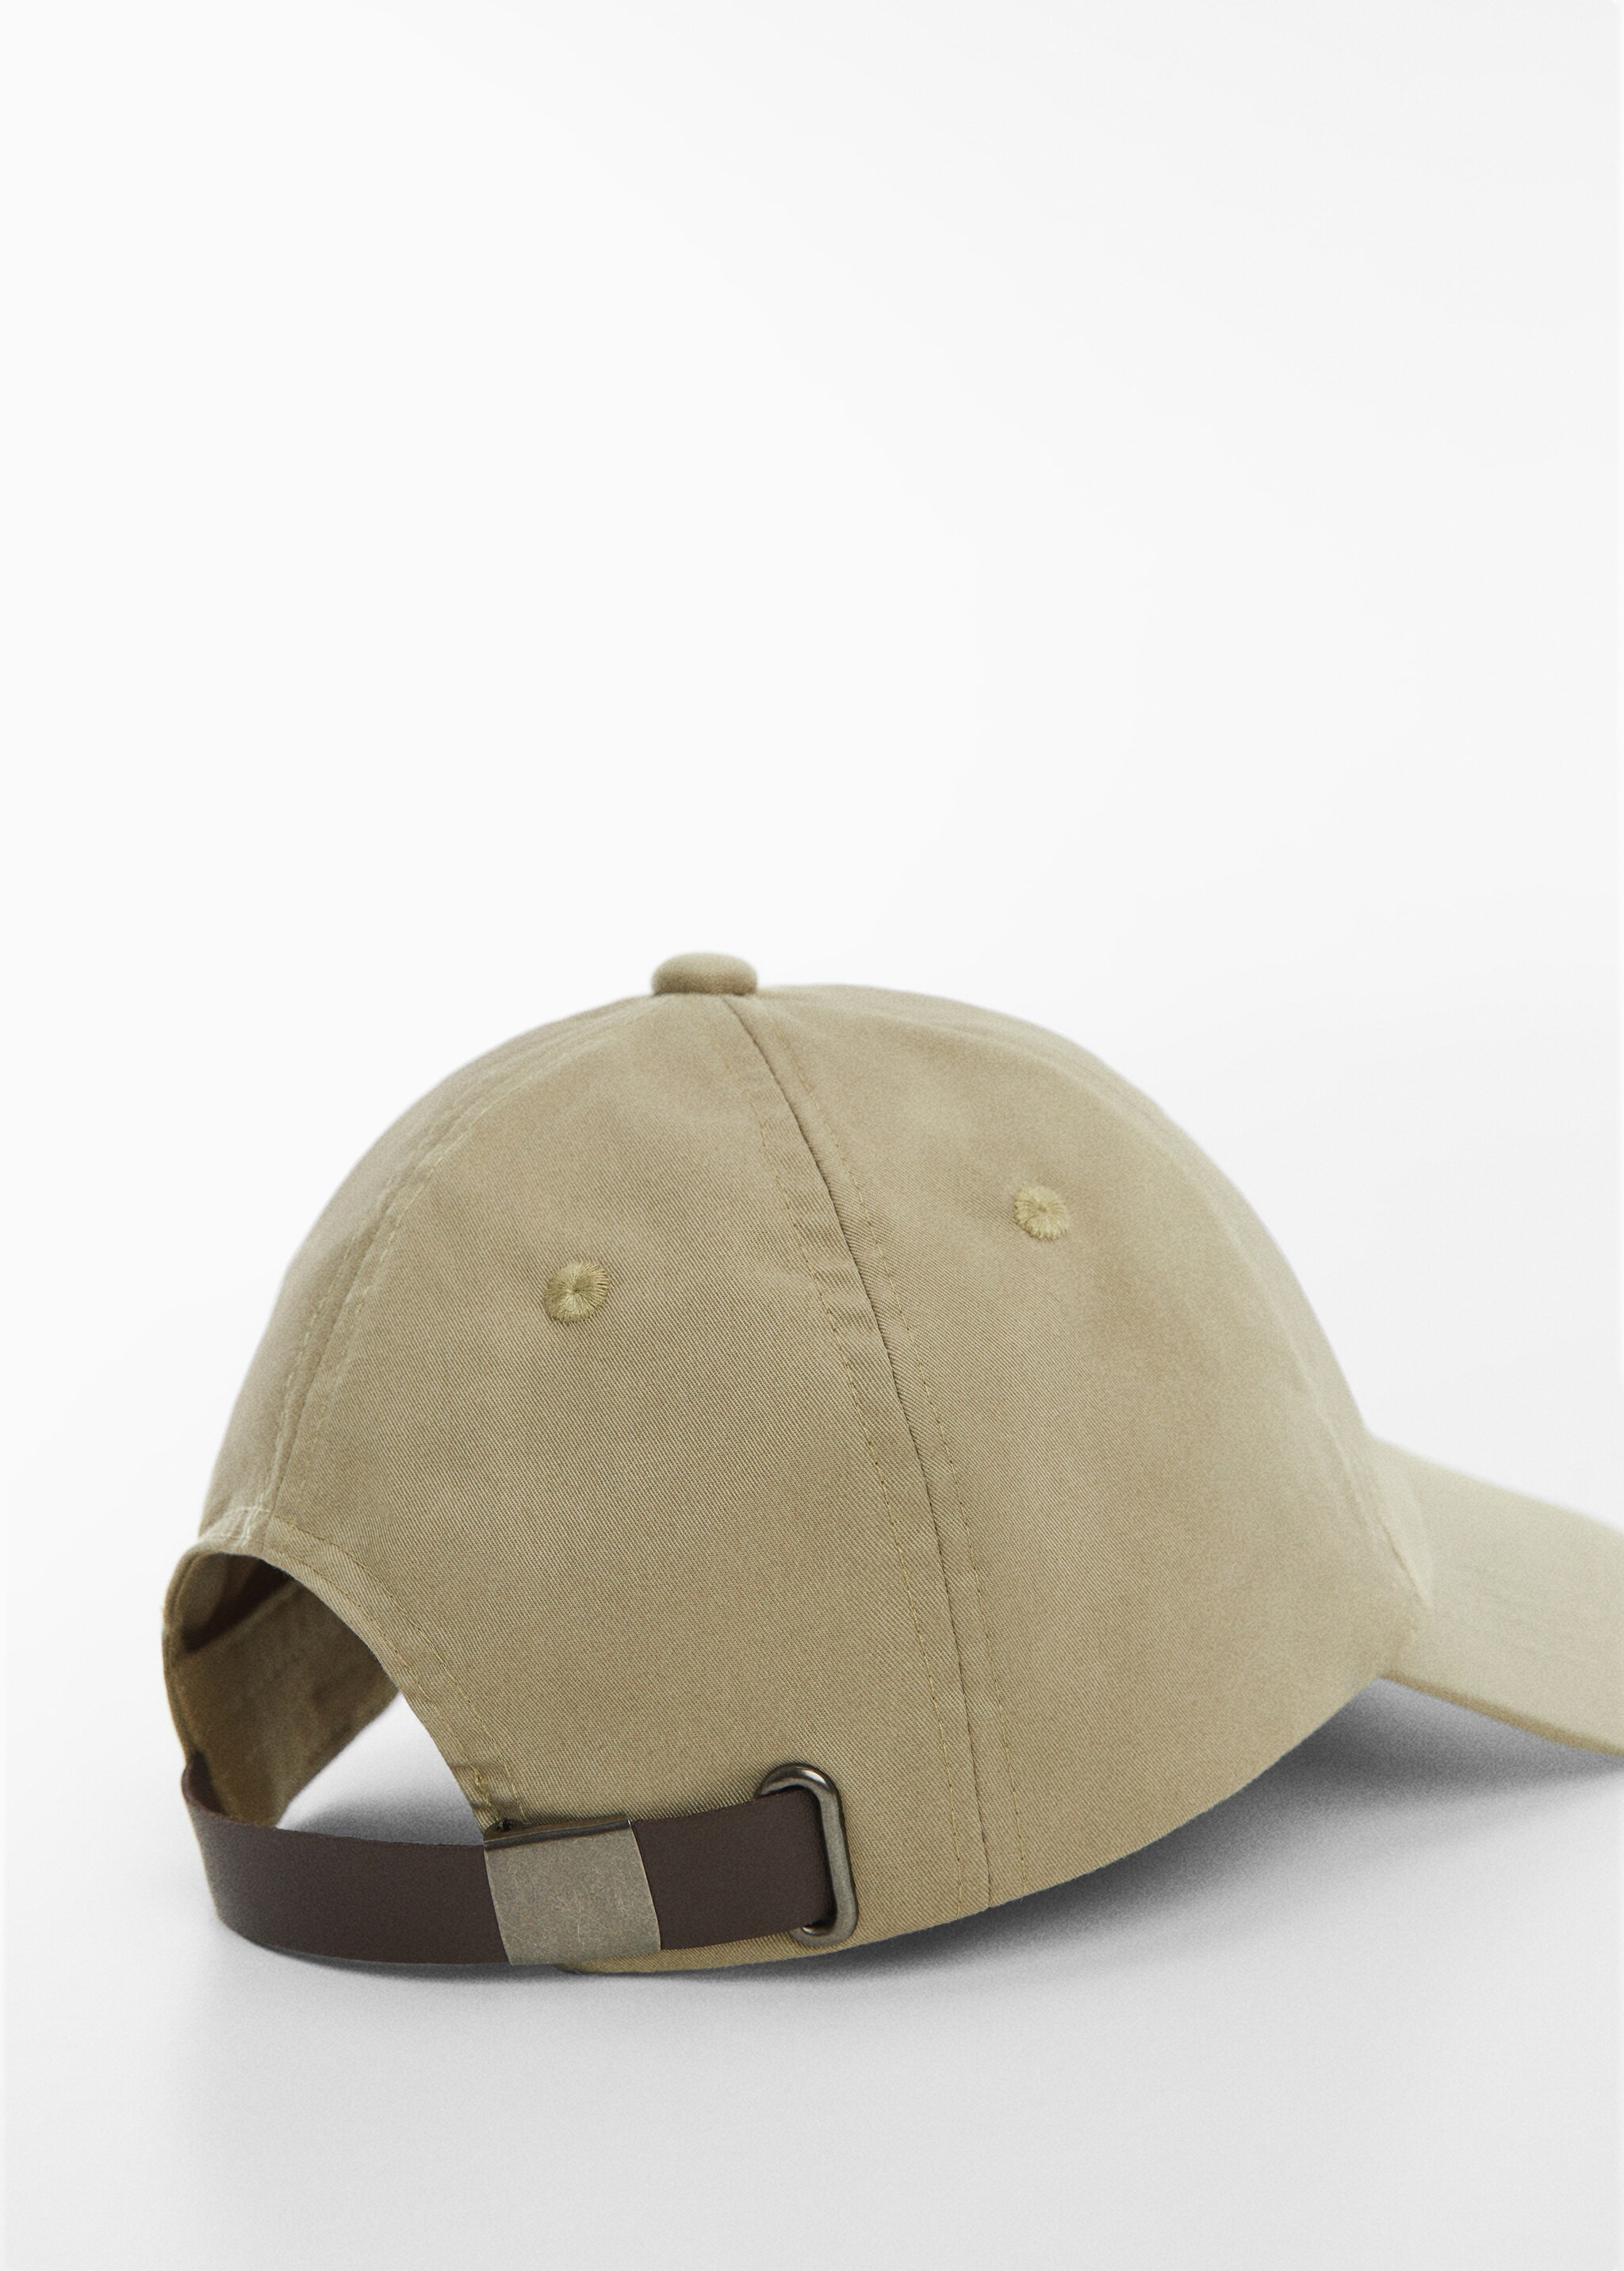 Cotton visor cap - Details of the article 1